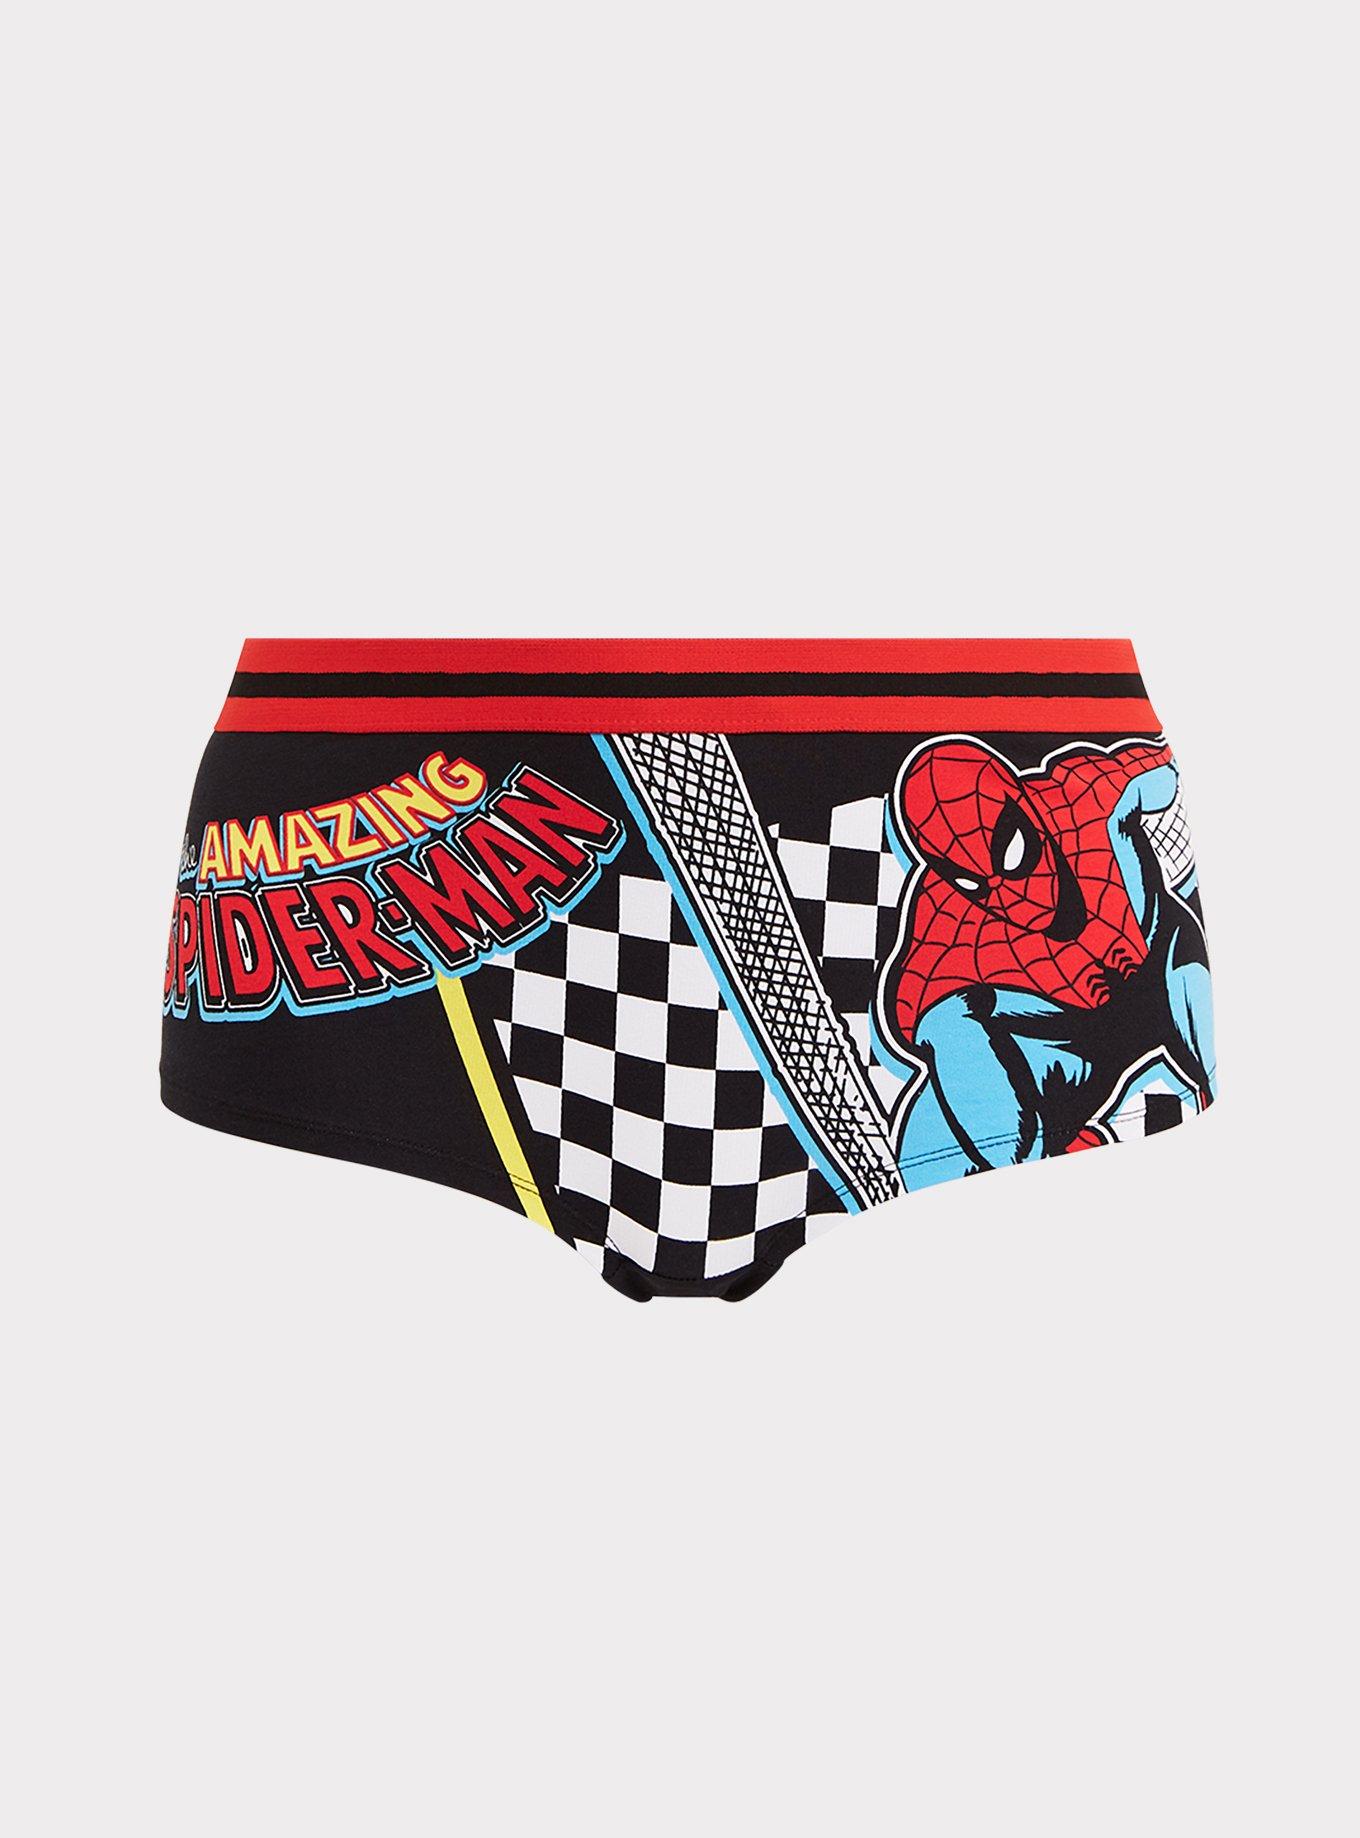 Spiderman Matching Underwear -  Canada